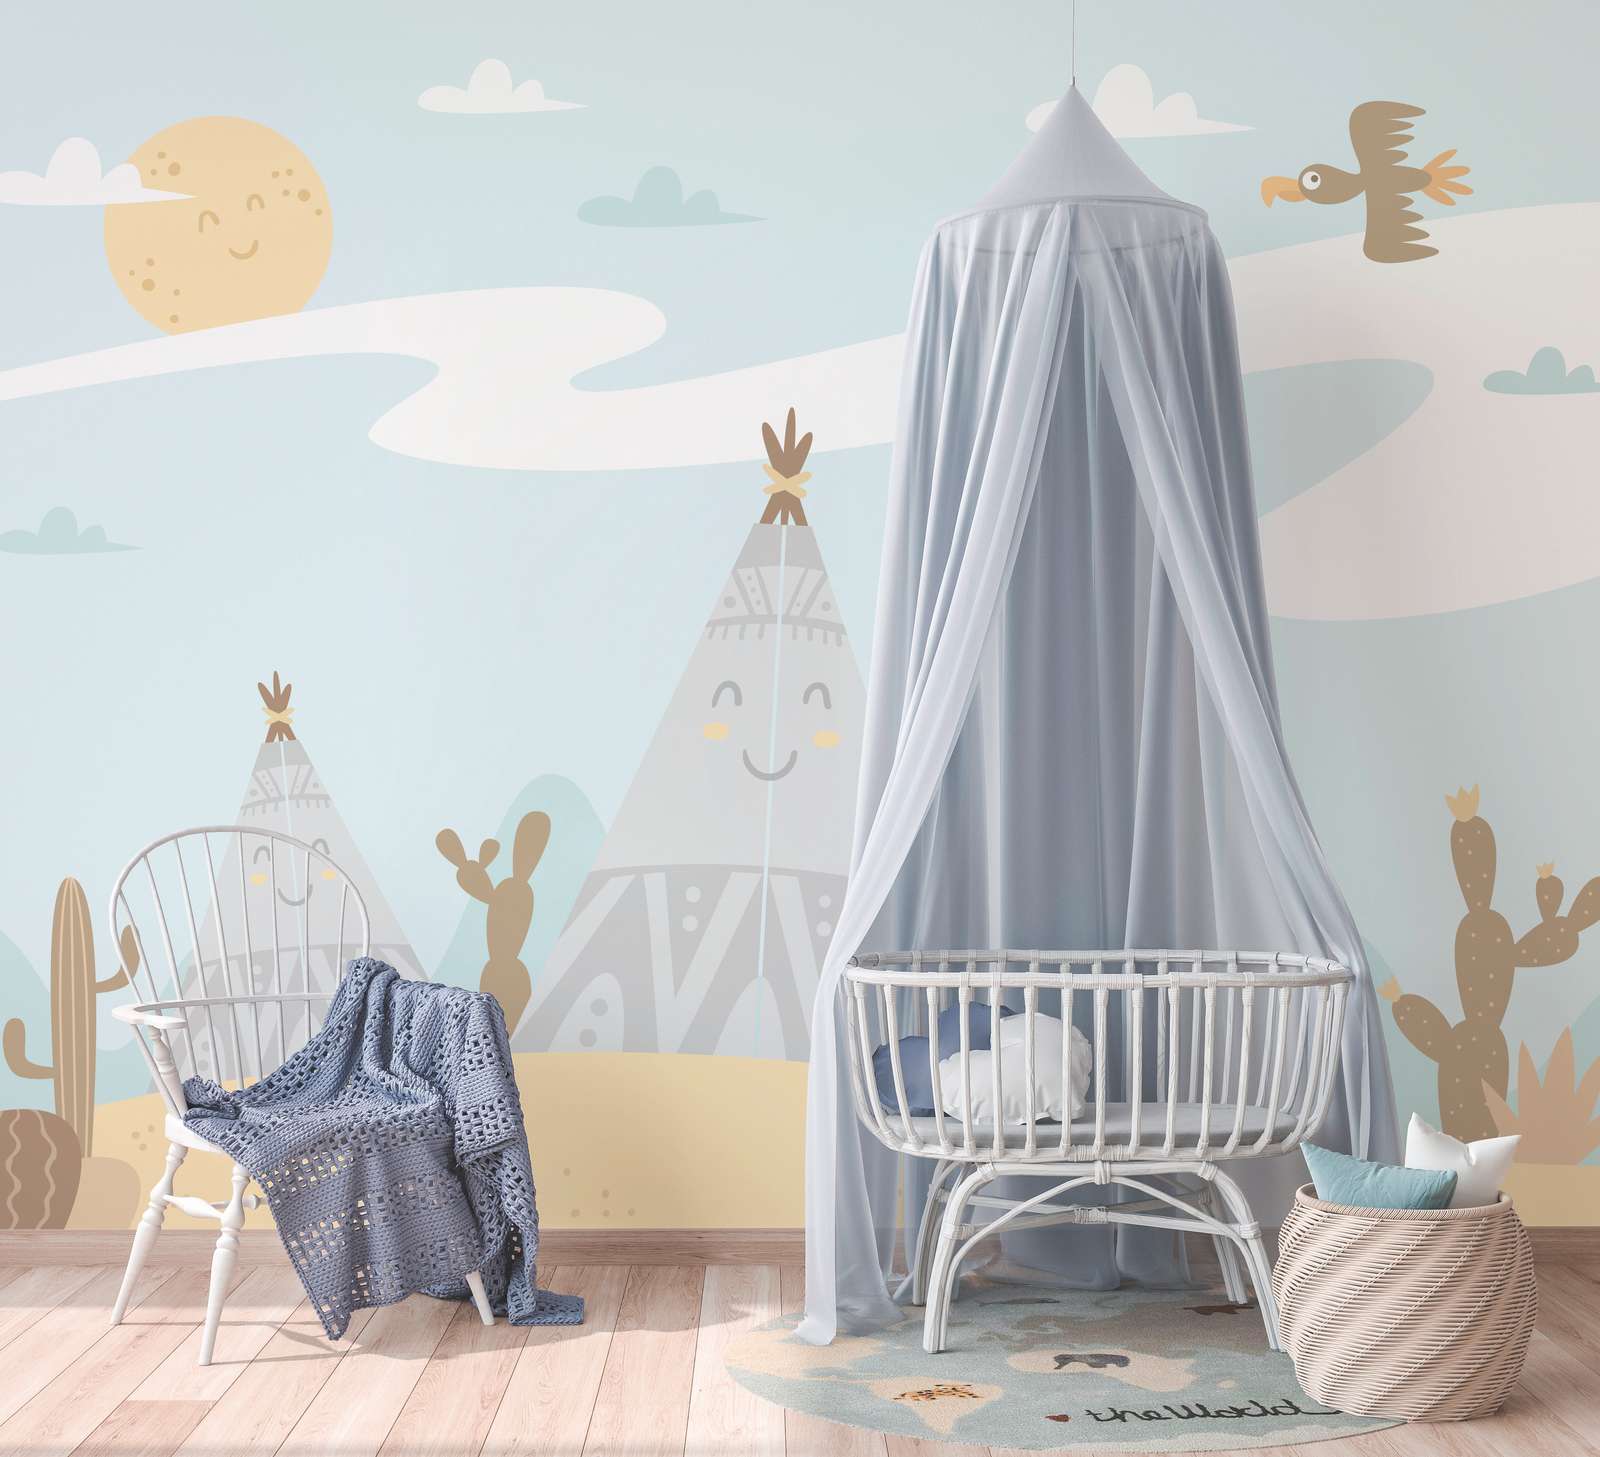             Kinderkamer Onderlaag behang Woestijn met Tippies en Cactussen - Blauw, Geel, Bruin
        